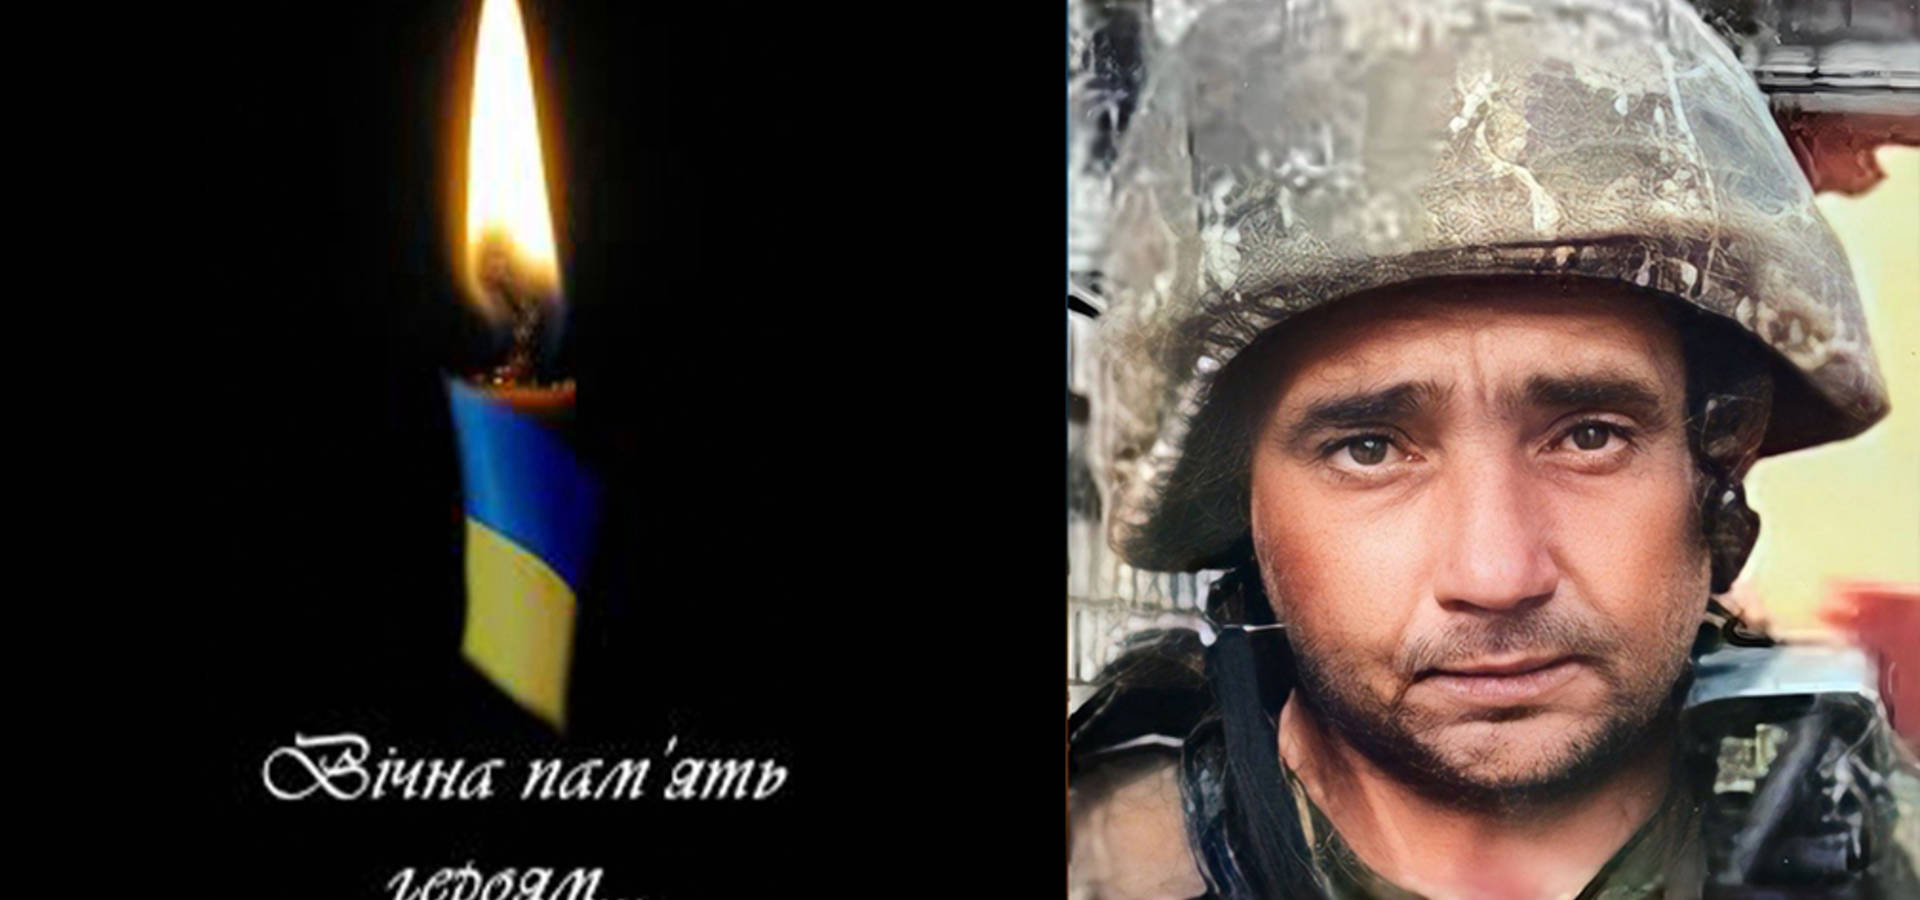 Захищаючи Україну в Донецькій області загинув Ярослав Олійник з Уланова